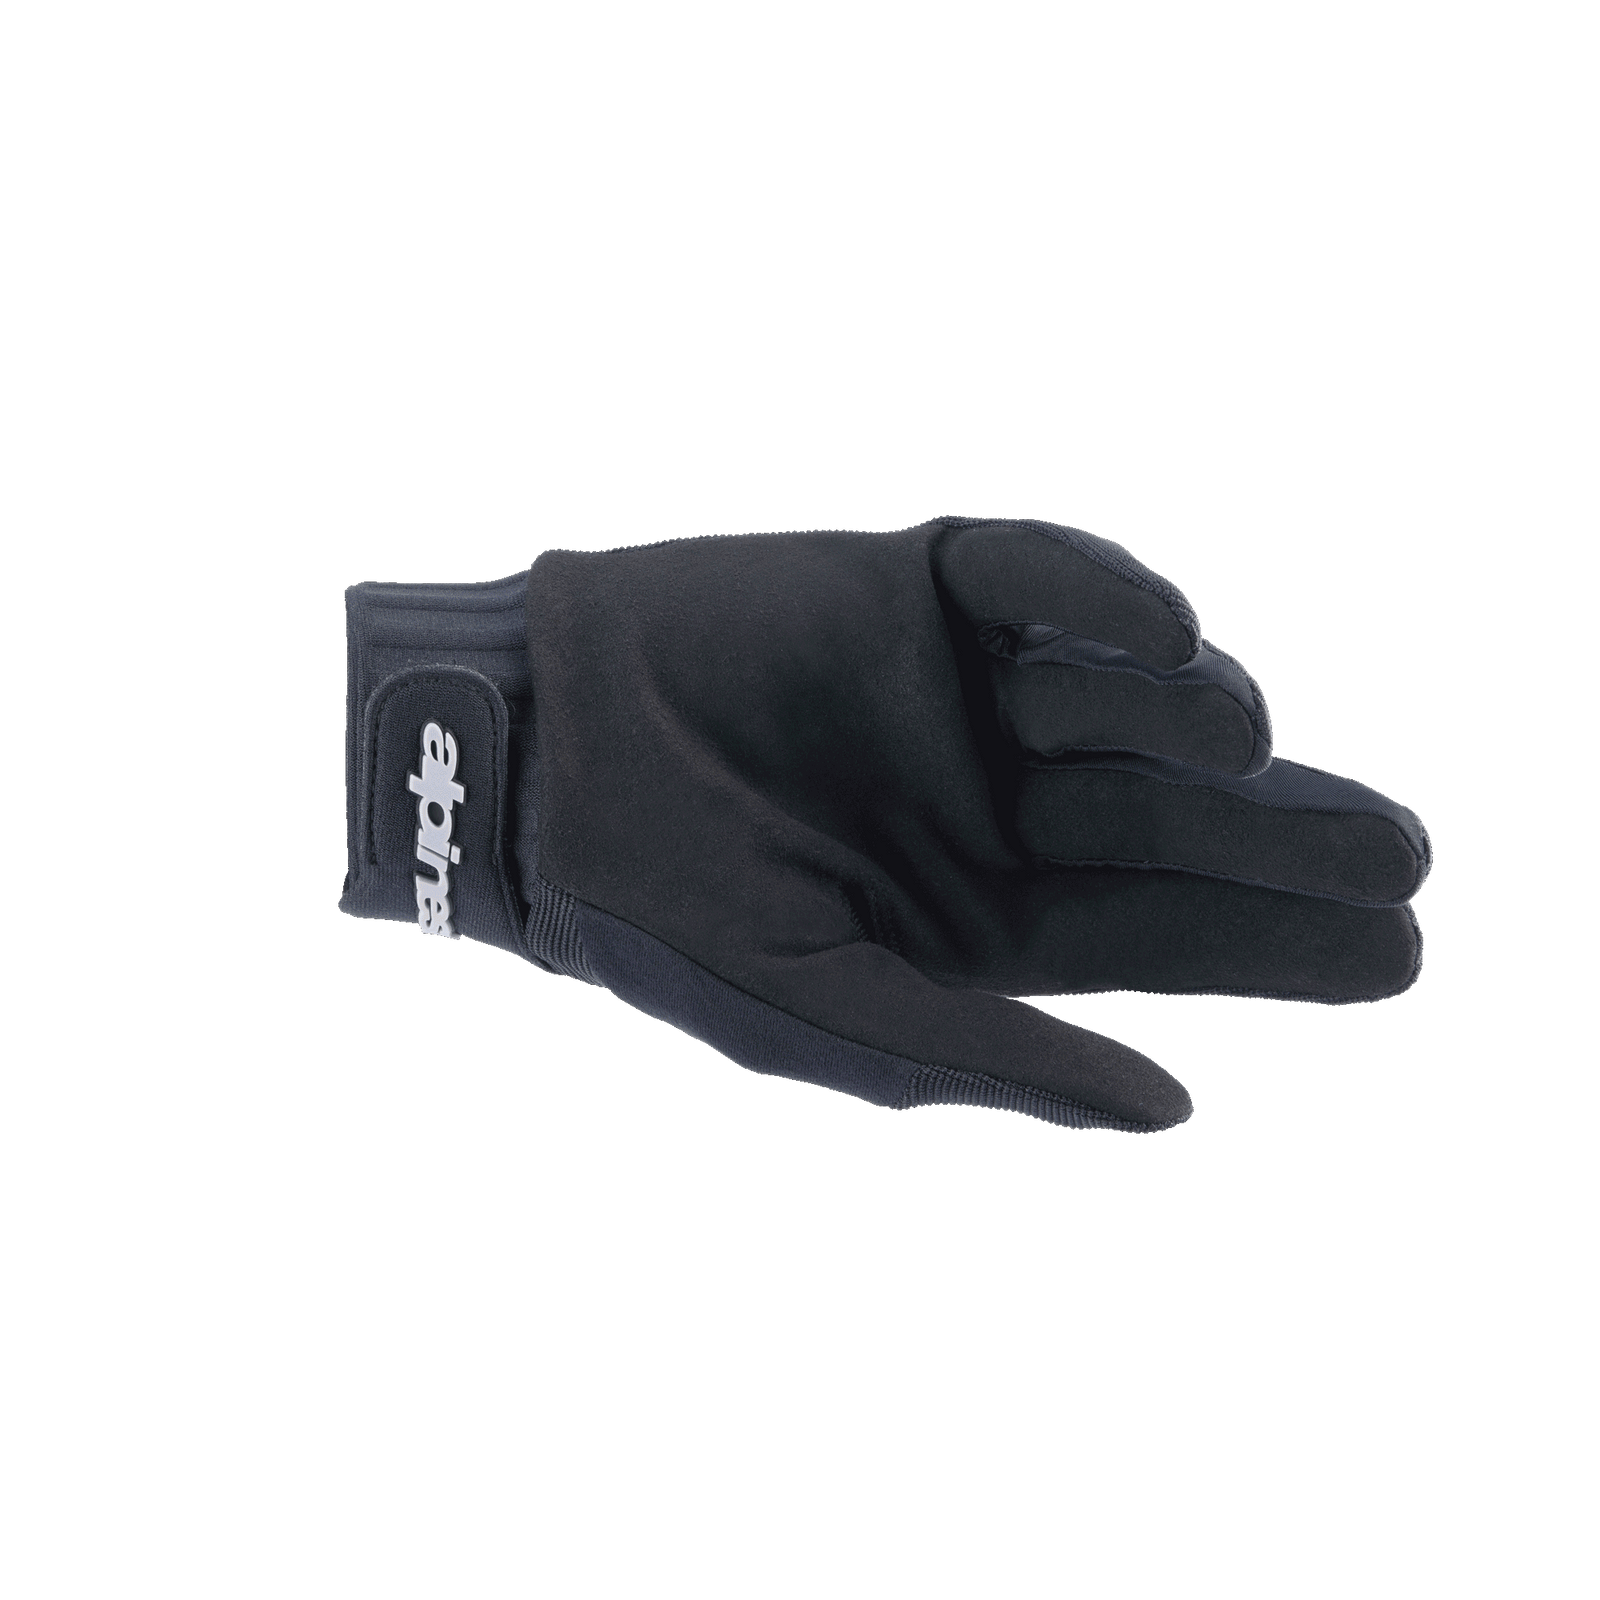 A-Dura Handschuhe